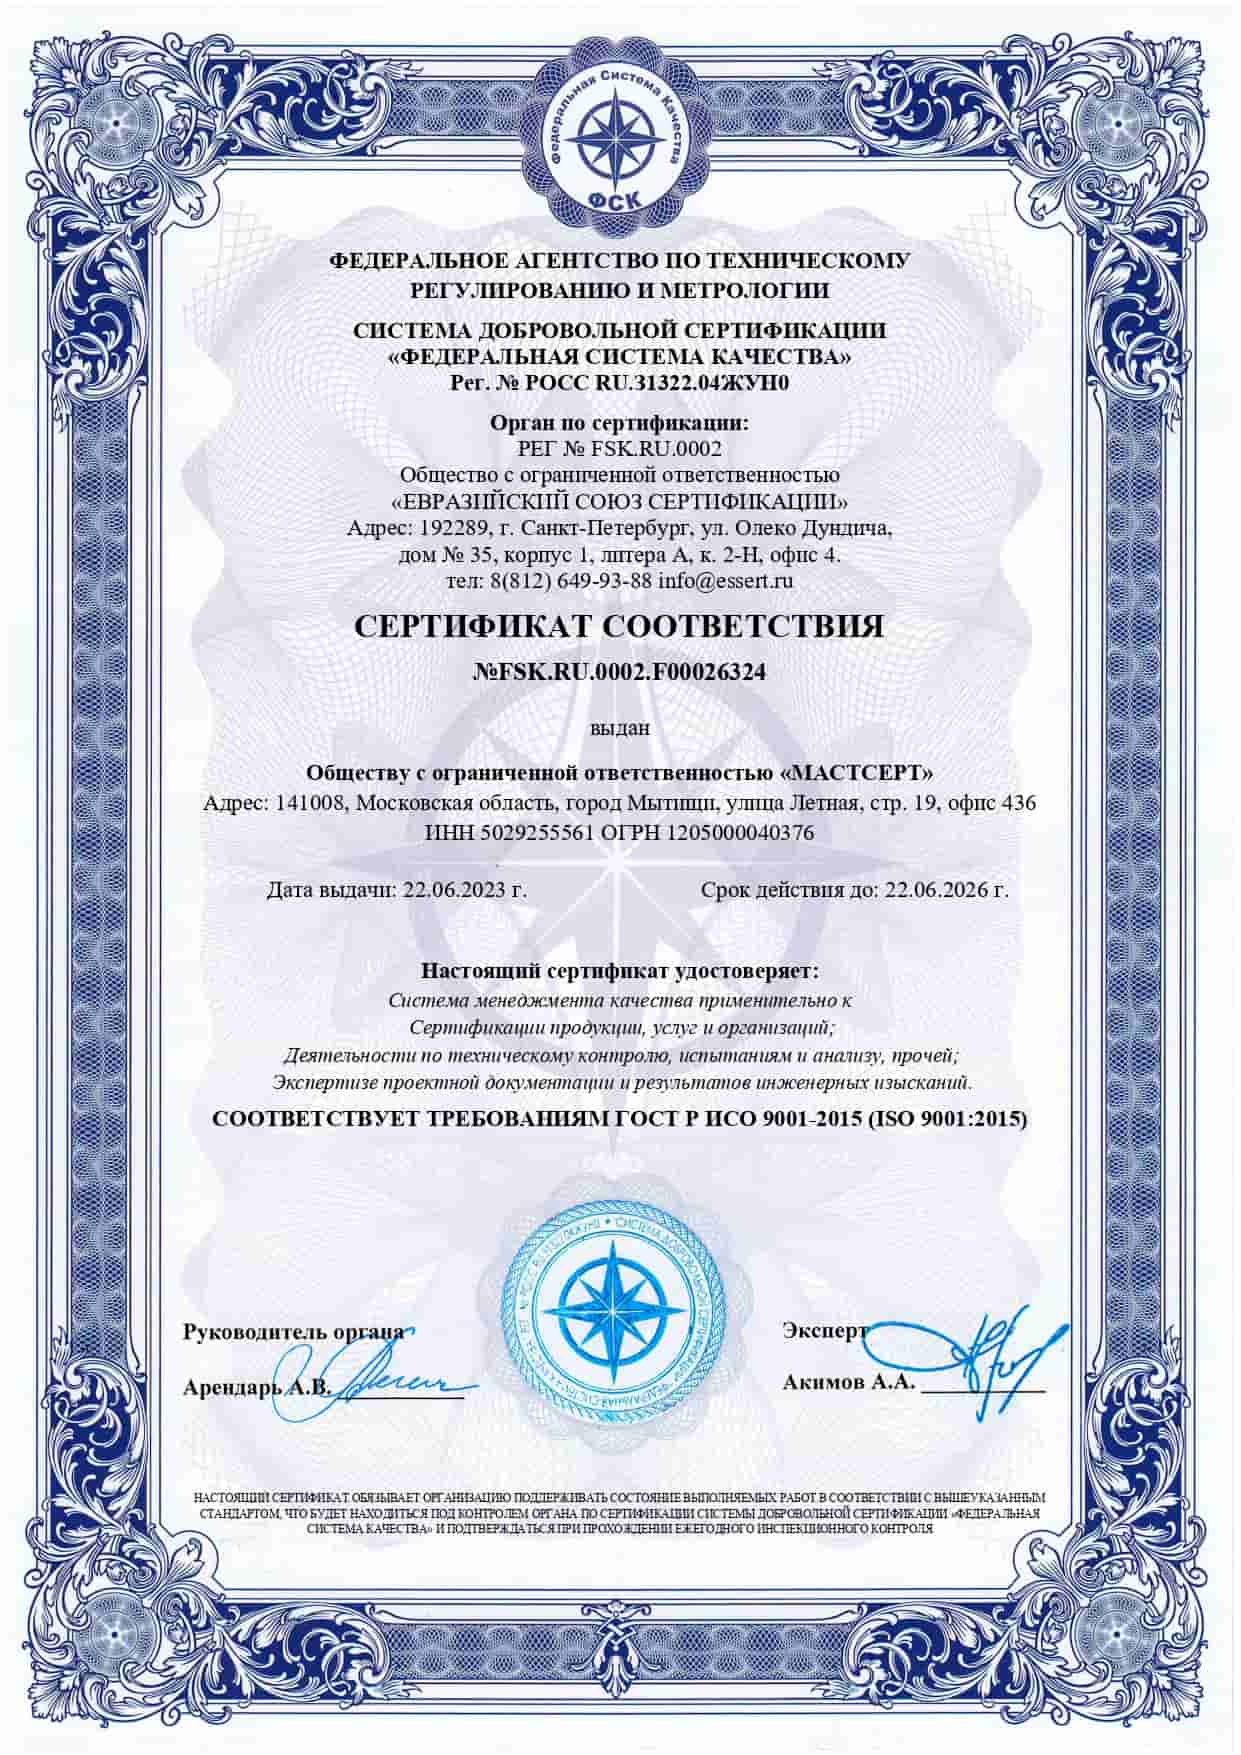 Сертификат соответствия ISO 9001 